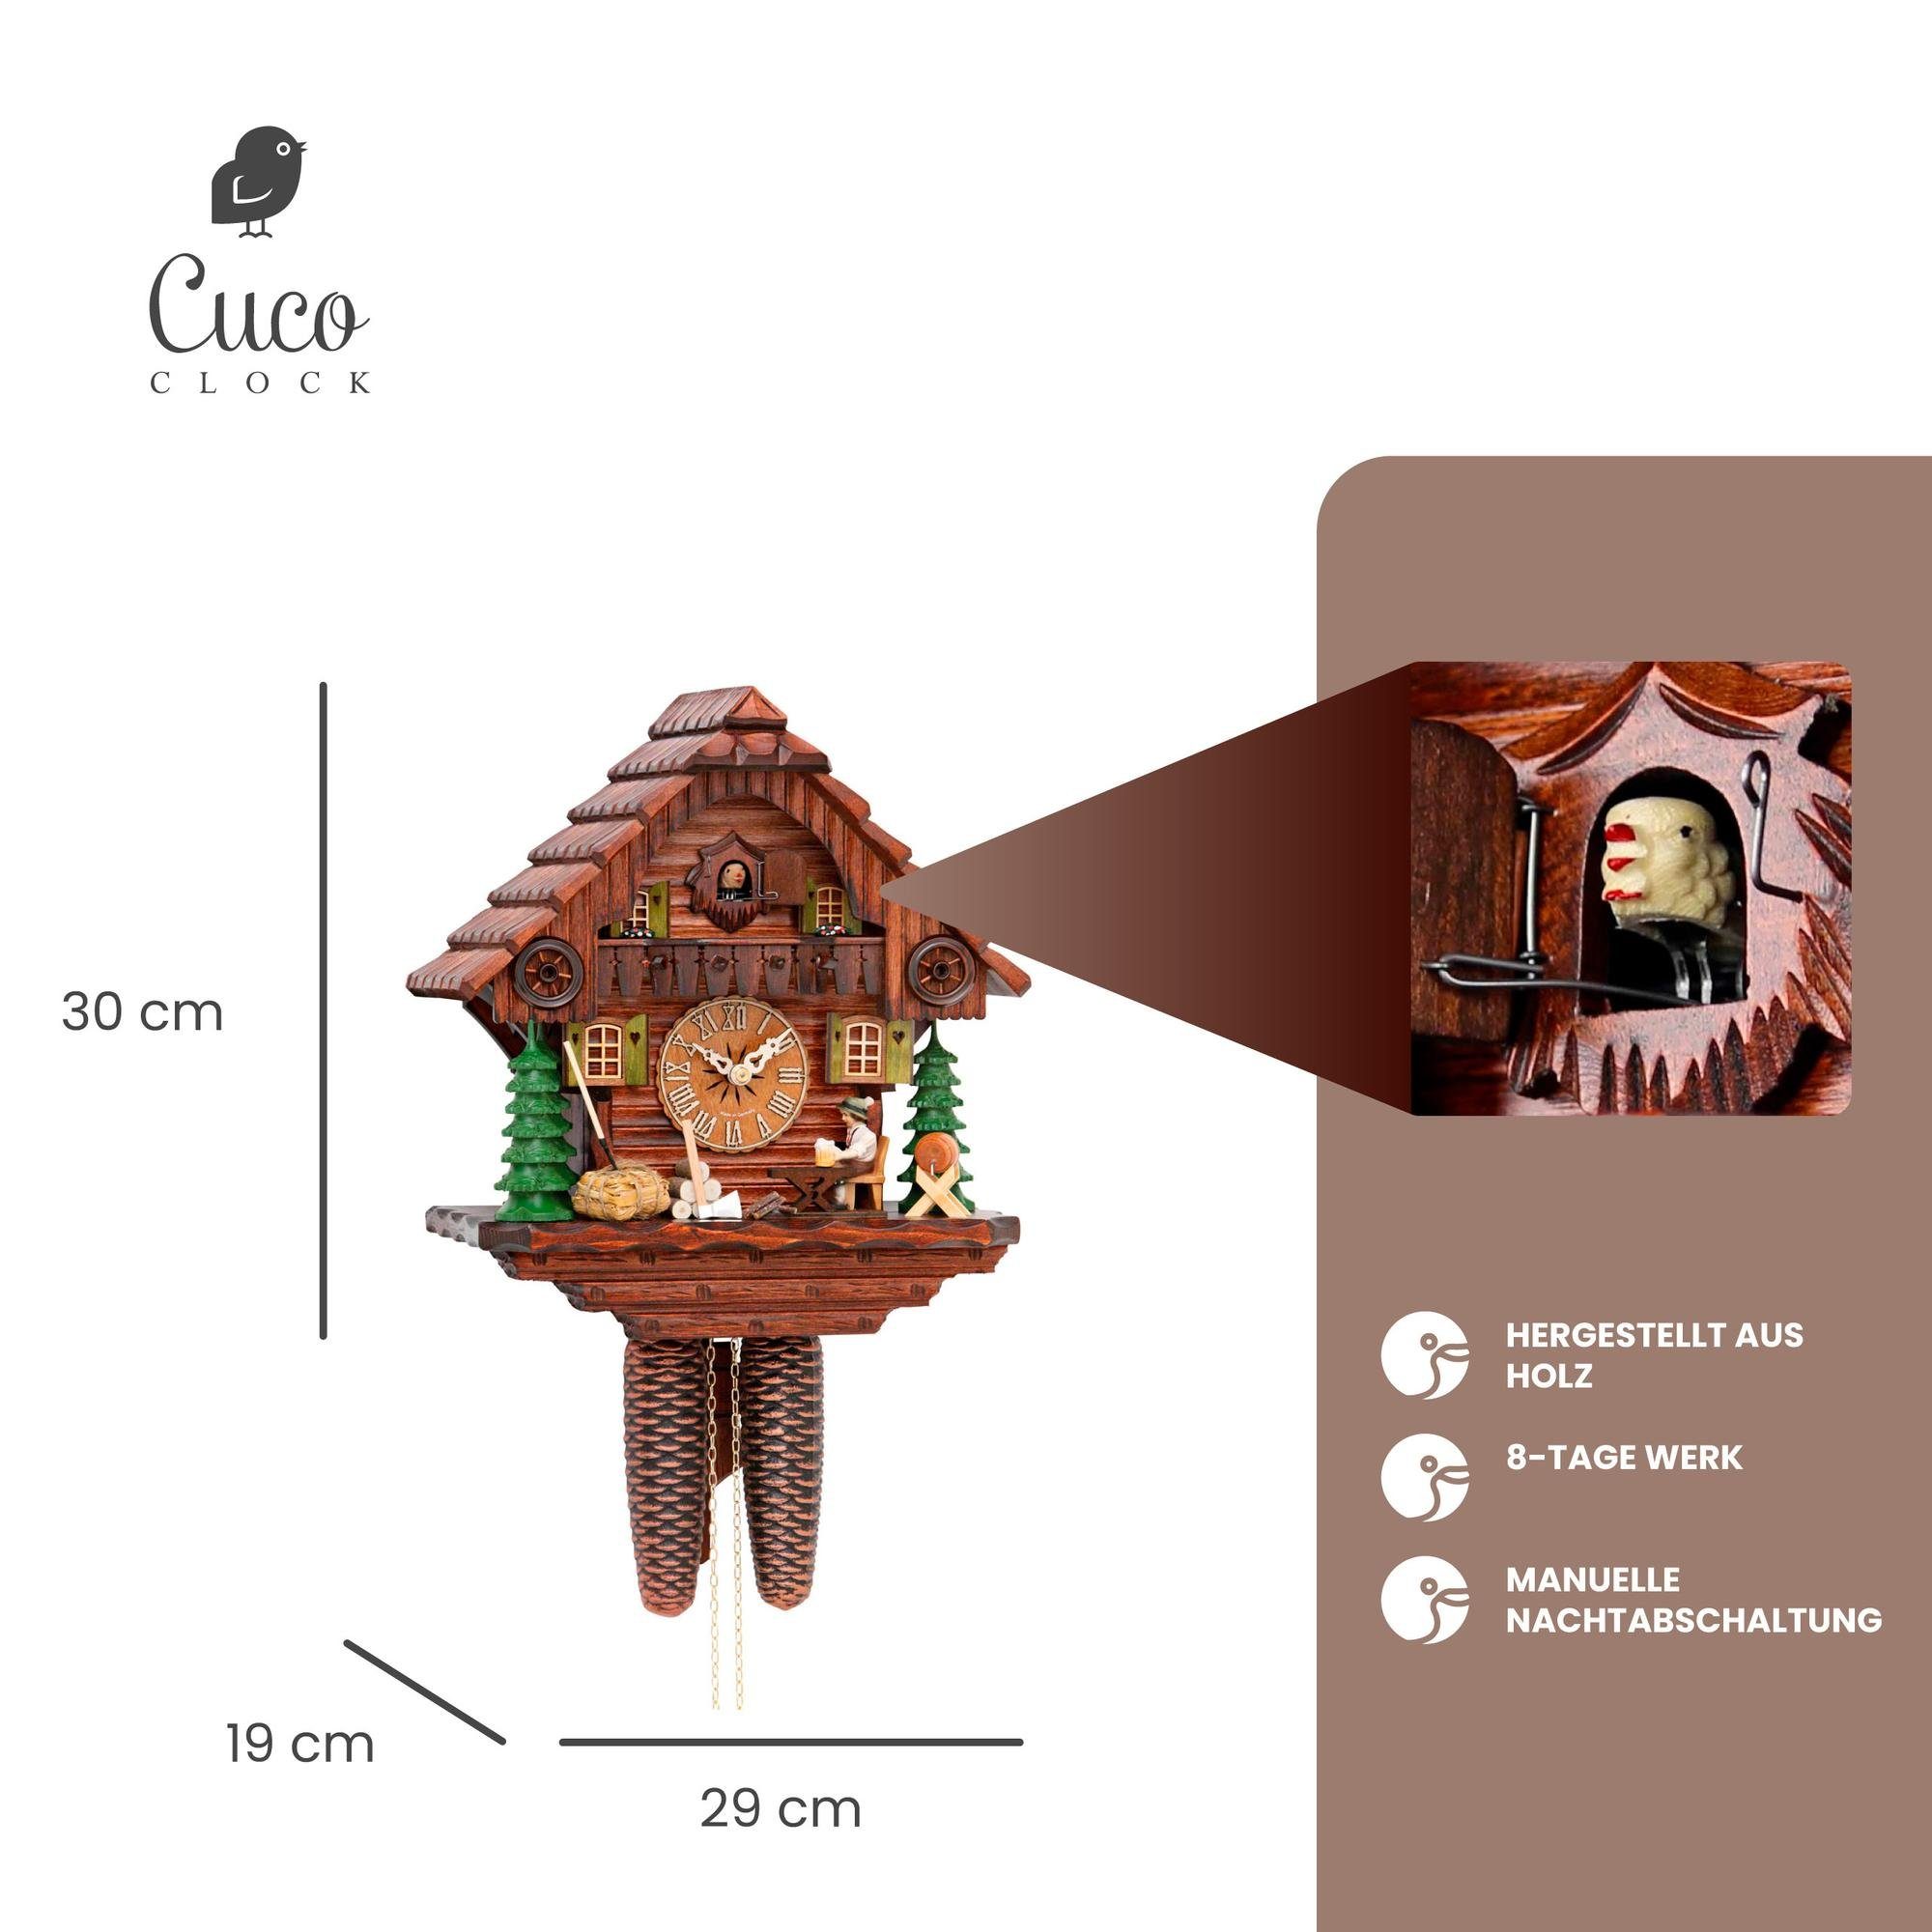 Cuco Clock Pendelwanduhr Kuckucksuhr Schwarzwalduhr Wanduhr - Tage 30cm, x 8 (19 manuelle Holz x 29 aus Werk, Biertrinker" Nachtabschaltung) "Der